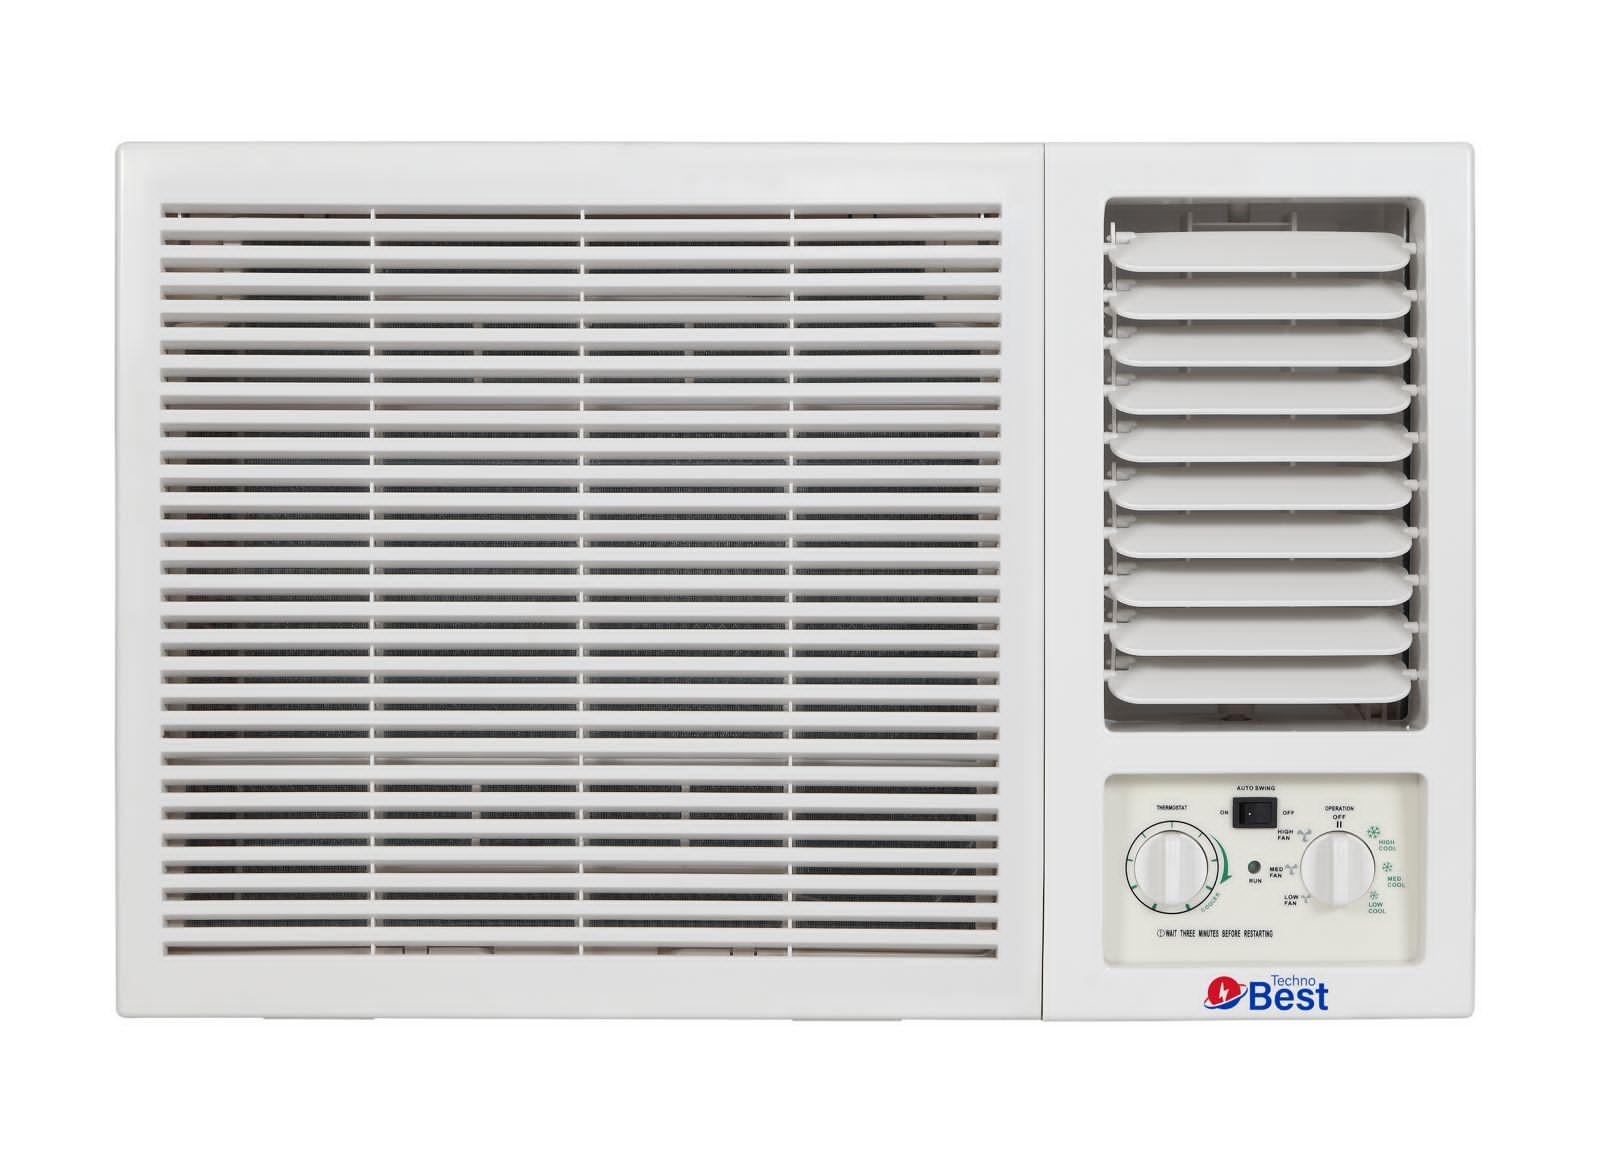 TECHNO BEST Window Air Conditioner, 18000 BTU, Hot/Cold, Quiet Sound - BWAC-018H